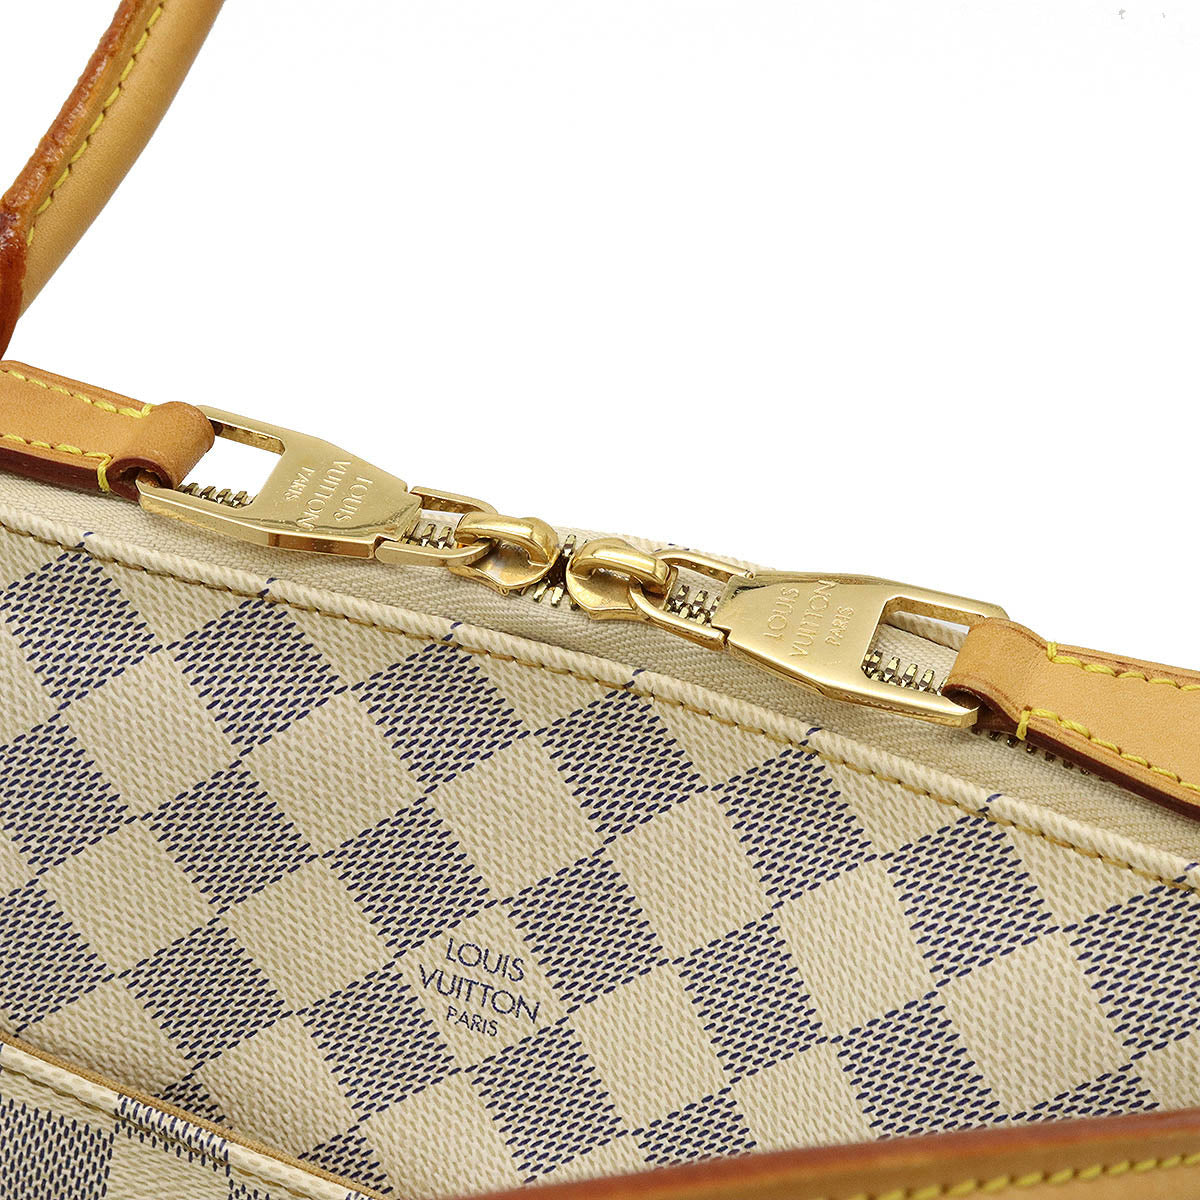 Louis Vuitton Damier Azur Figeri PM Shoulder Bag N41176